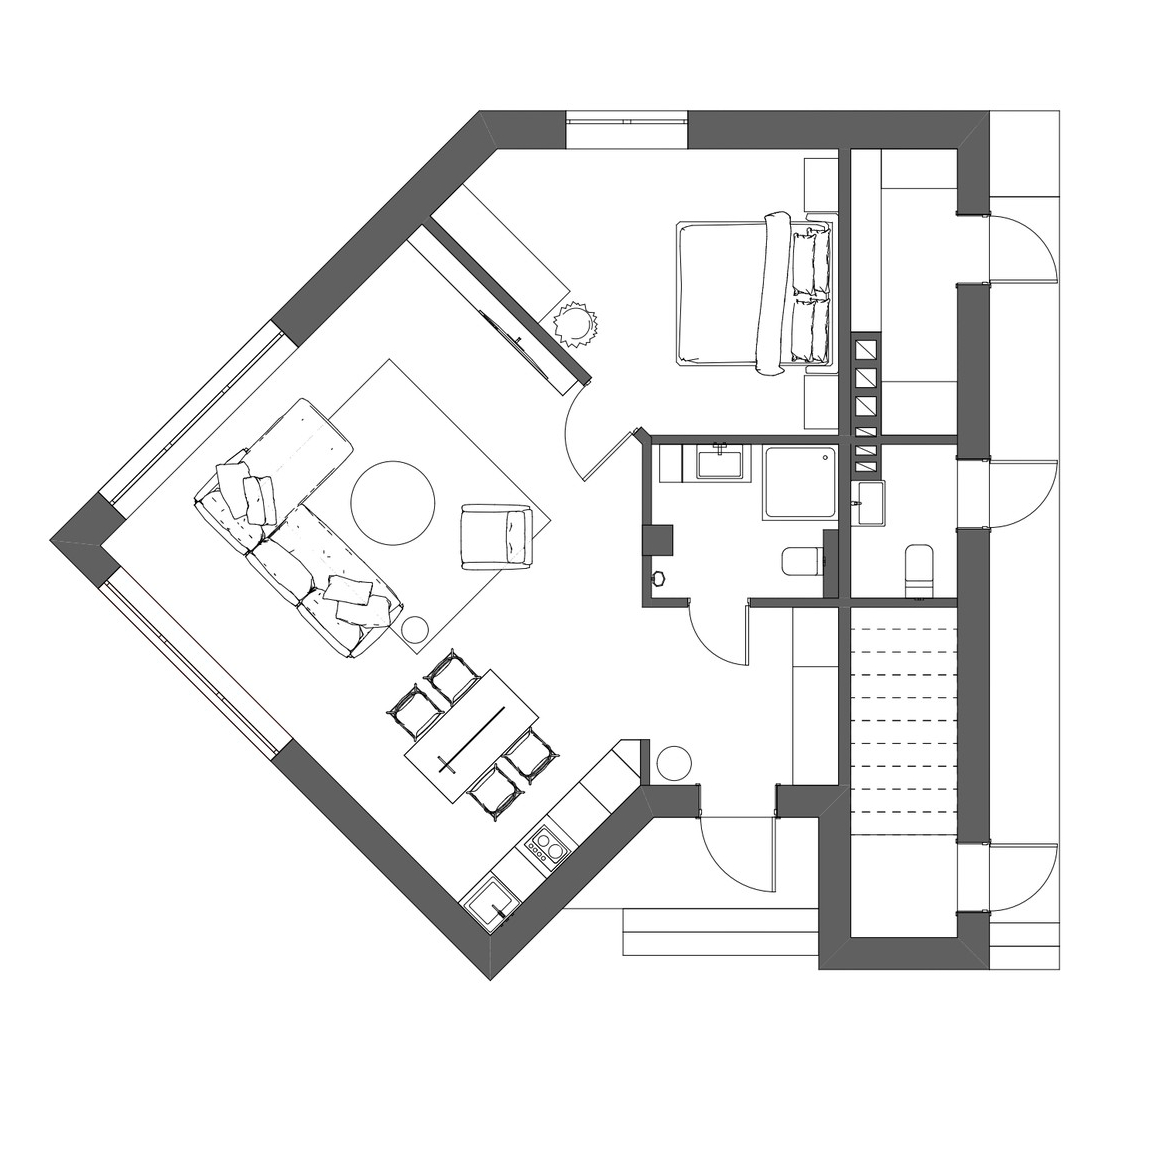 Sơ đồ thiết kế ngôi nhà diện tích 80m² của cặp vợ chồng son do Anna Usova cung cấp.